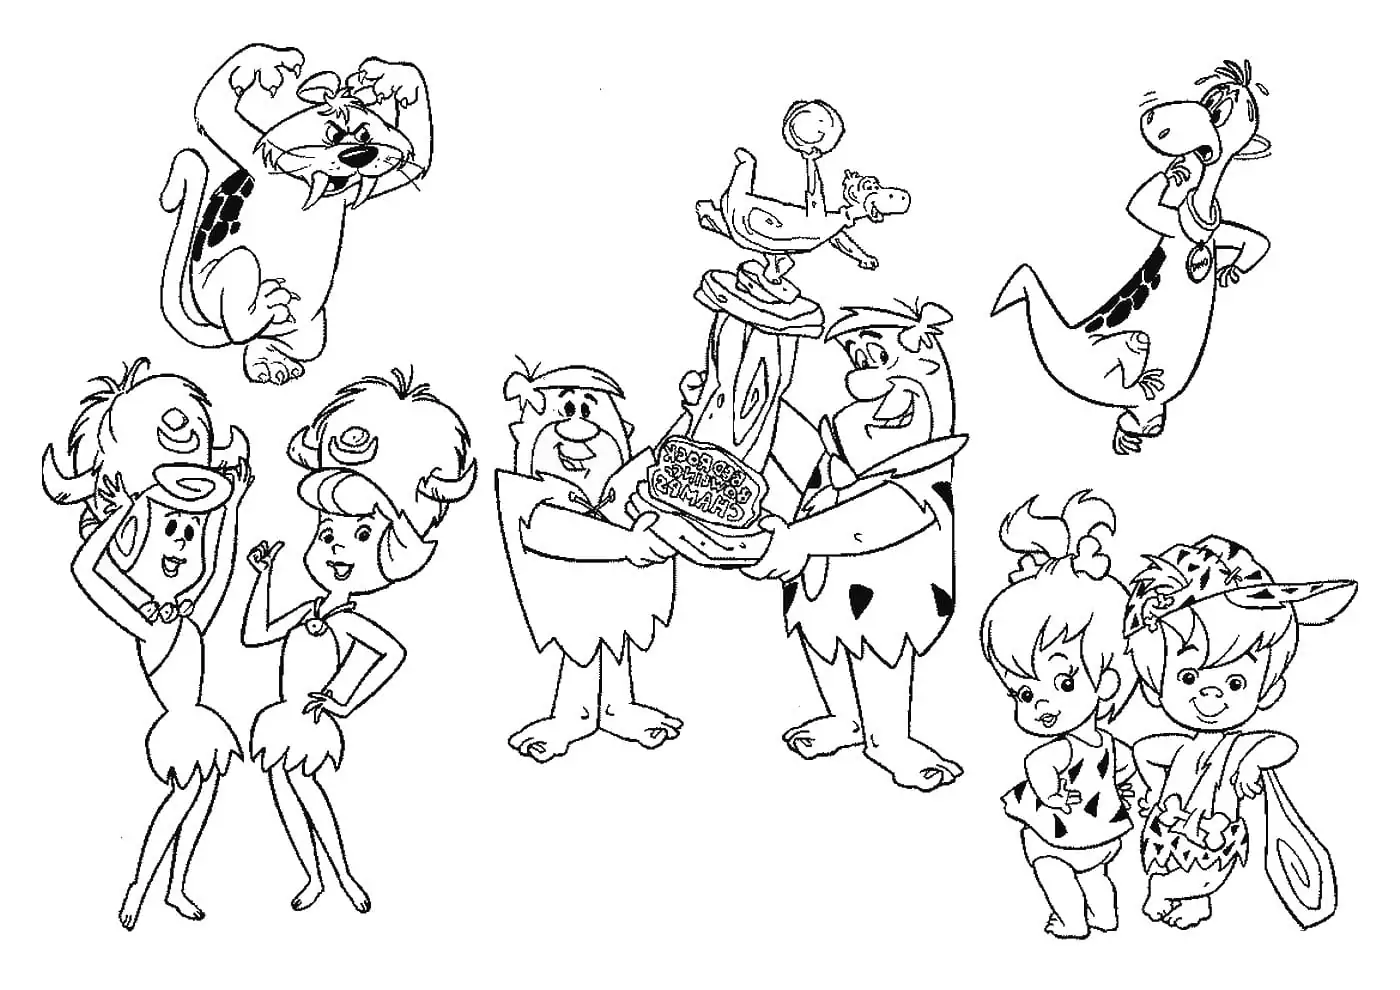 The Flintstones Characters